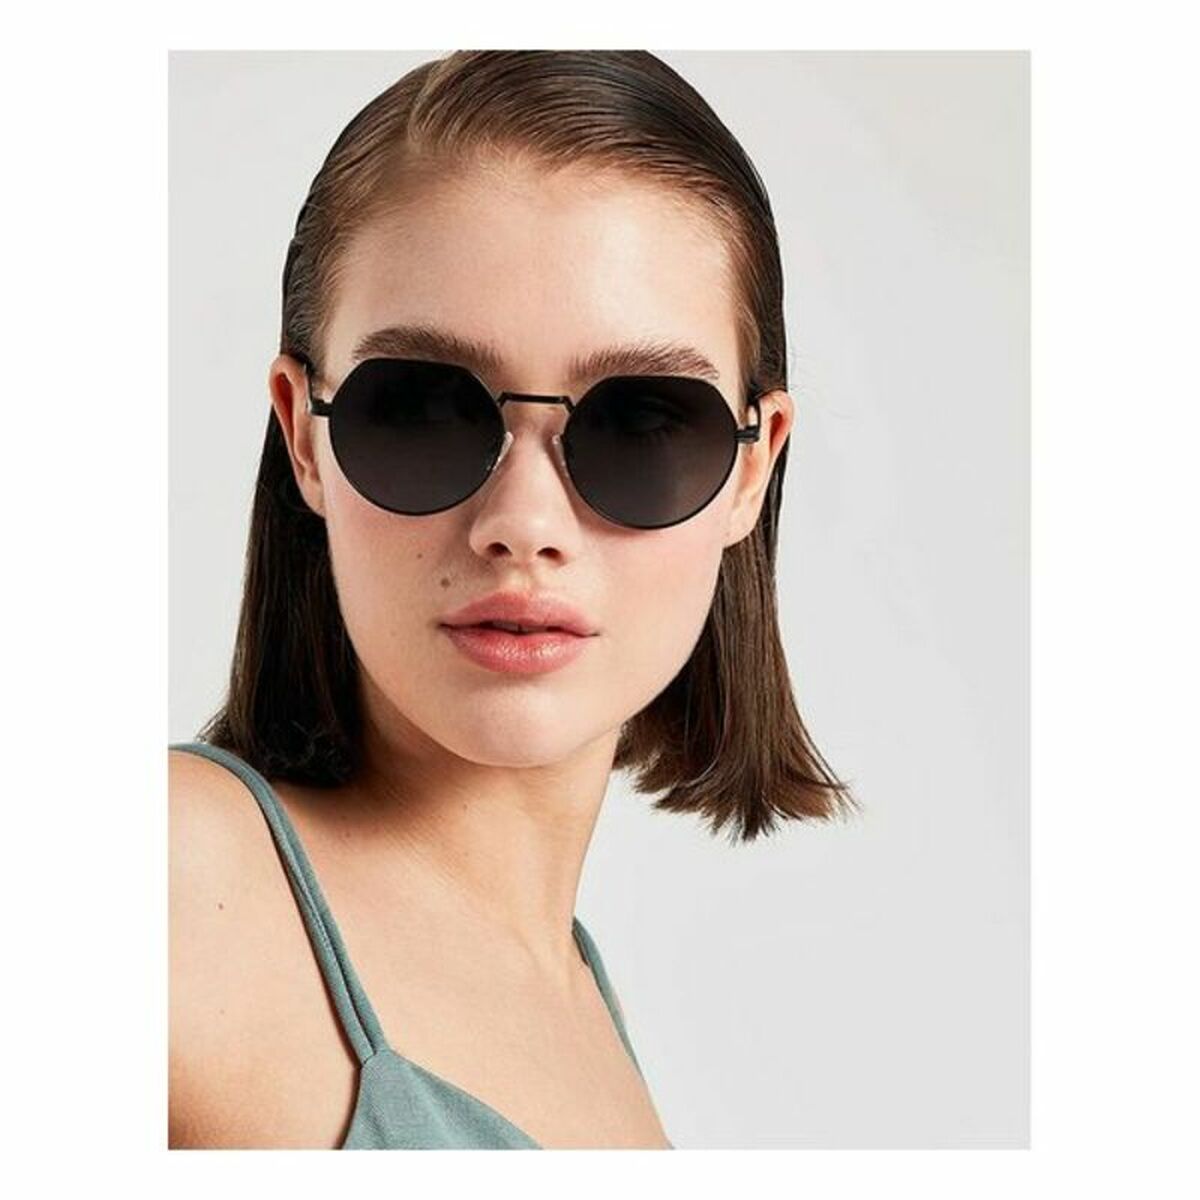 Unisex Sunglasses Aura Hawkers